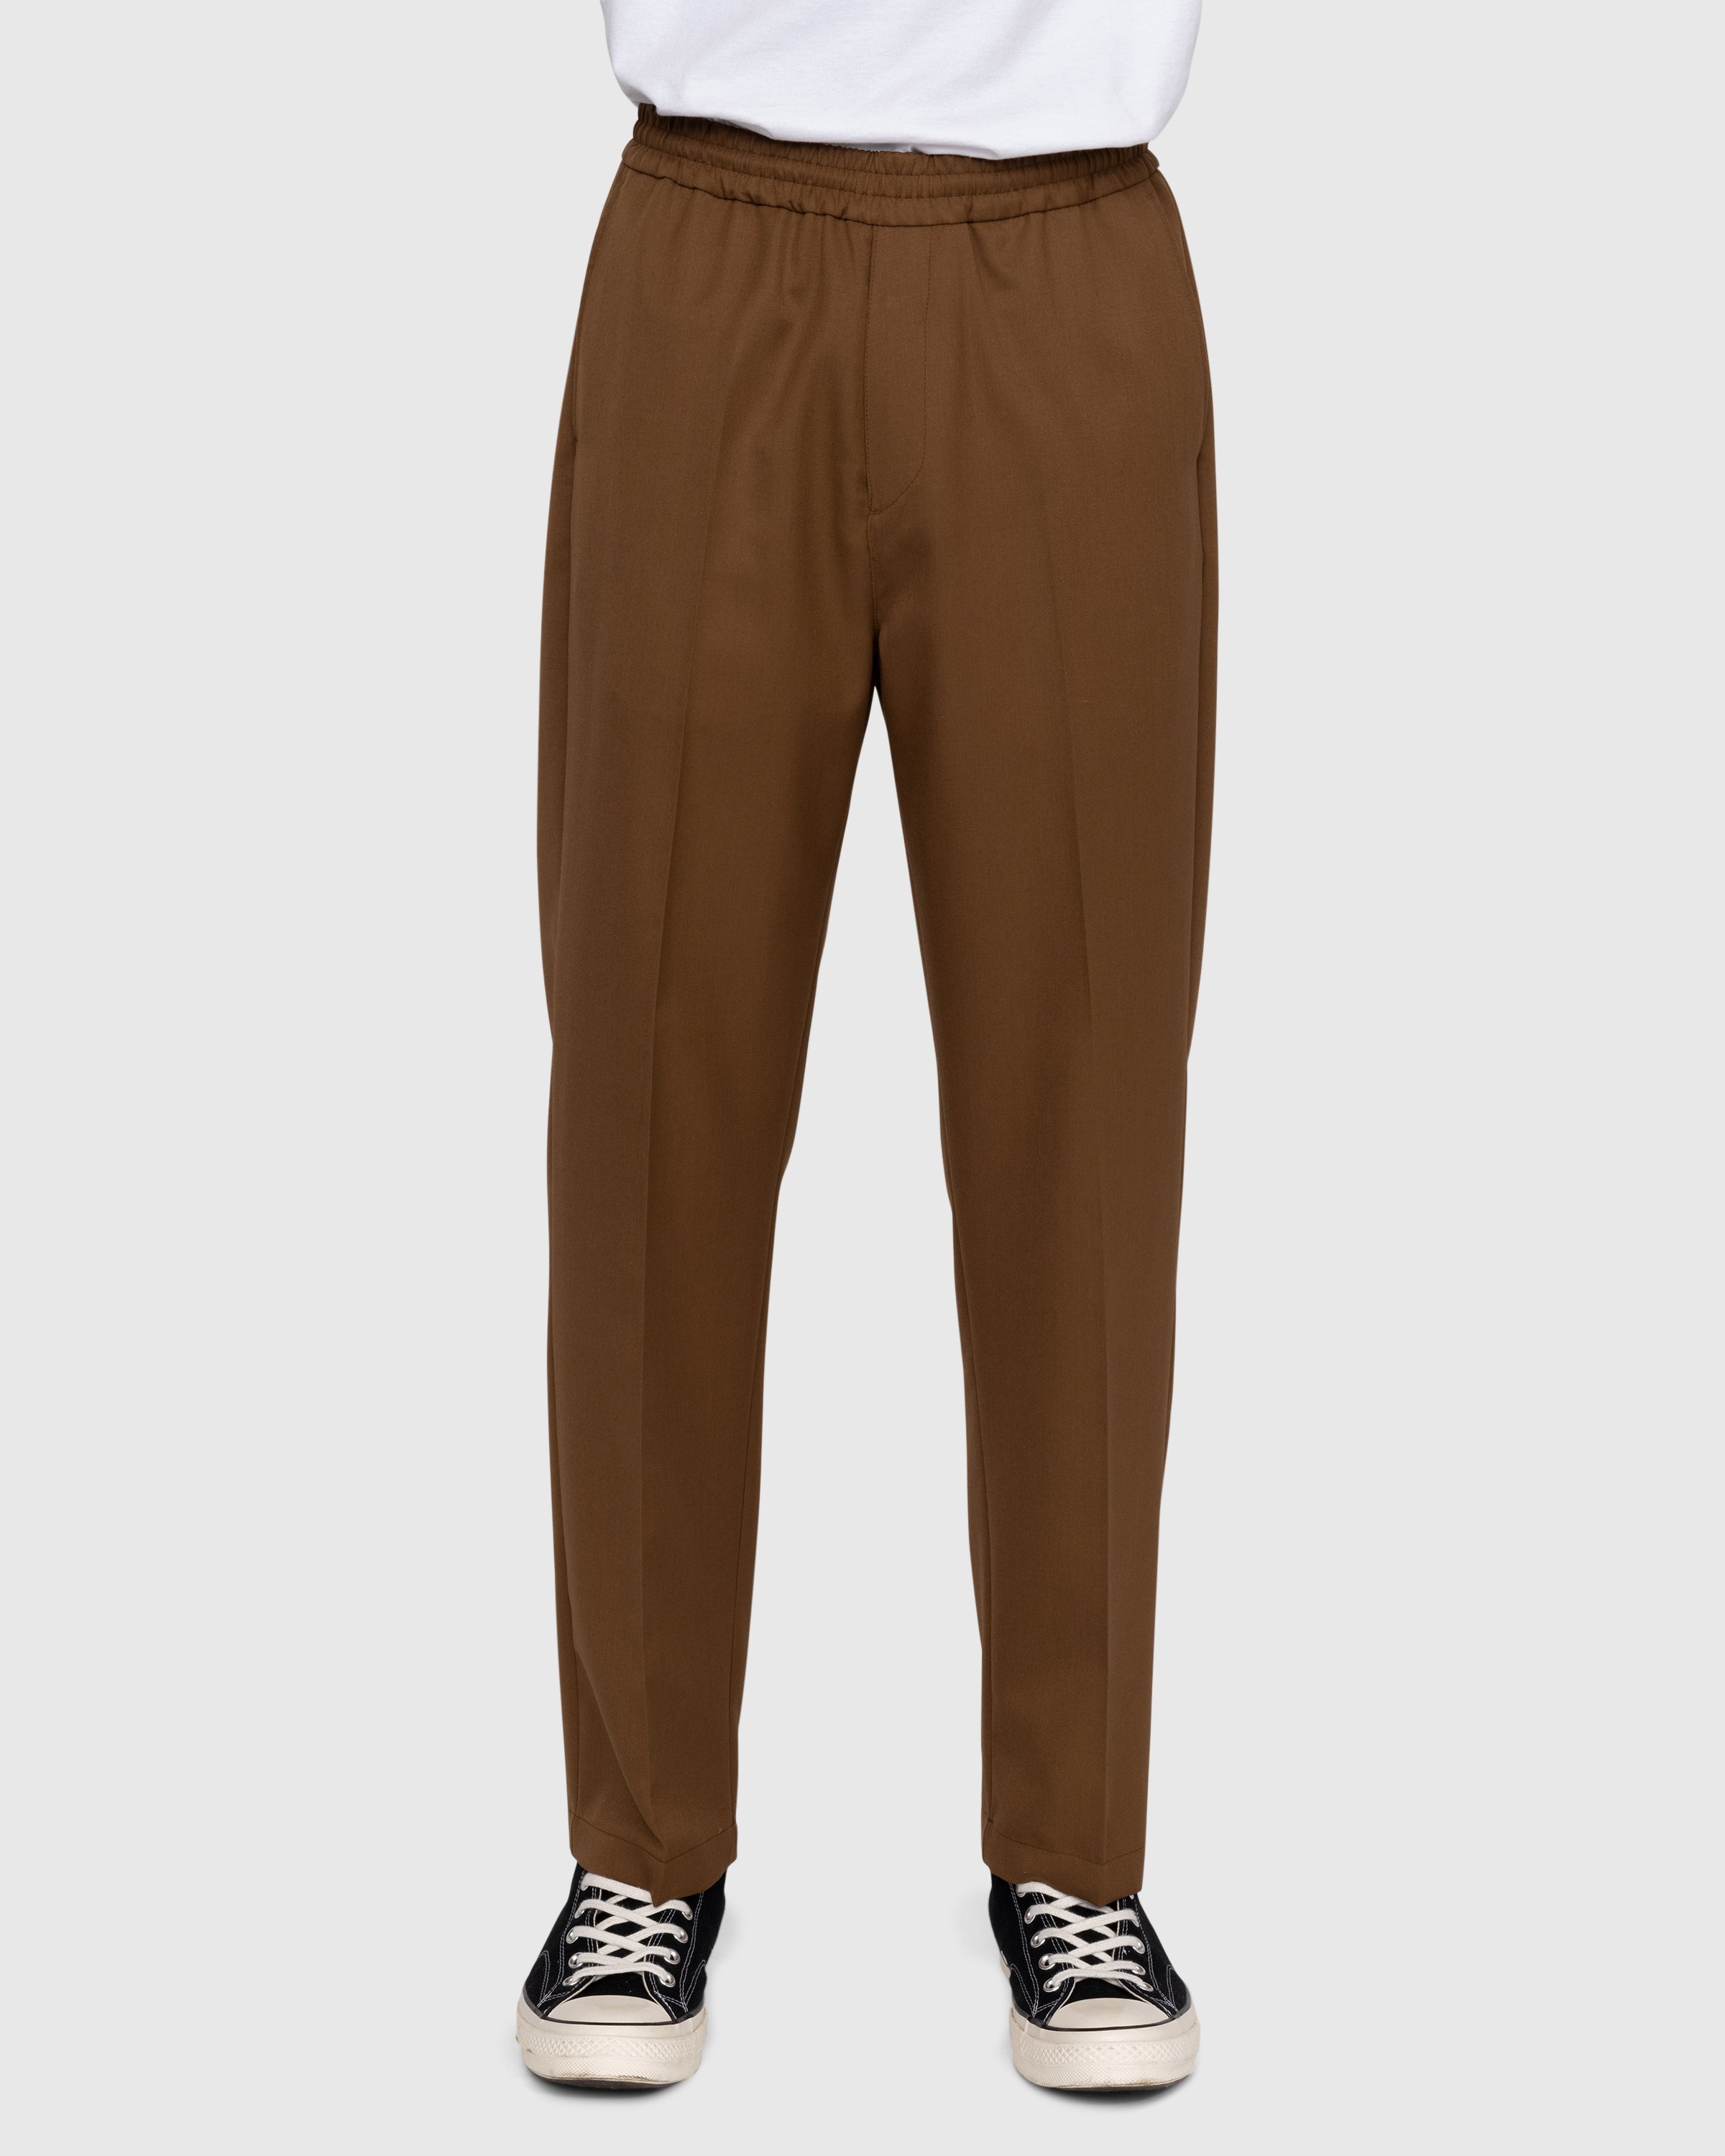 Highsnobiety - Wool Blend Elastic Pants Brown - Clothing - Brown - Image 2